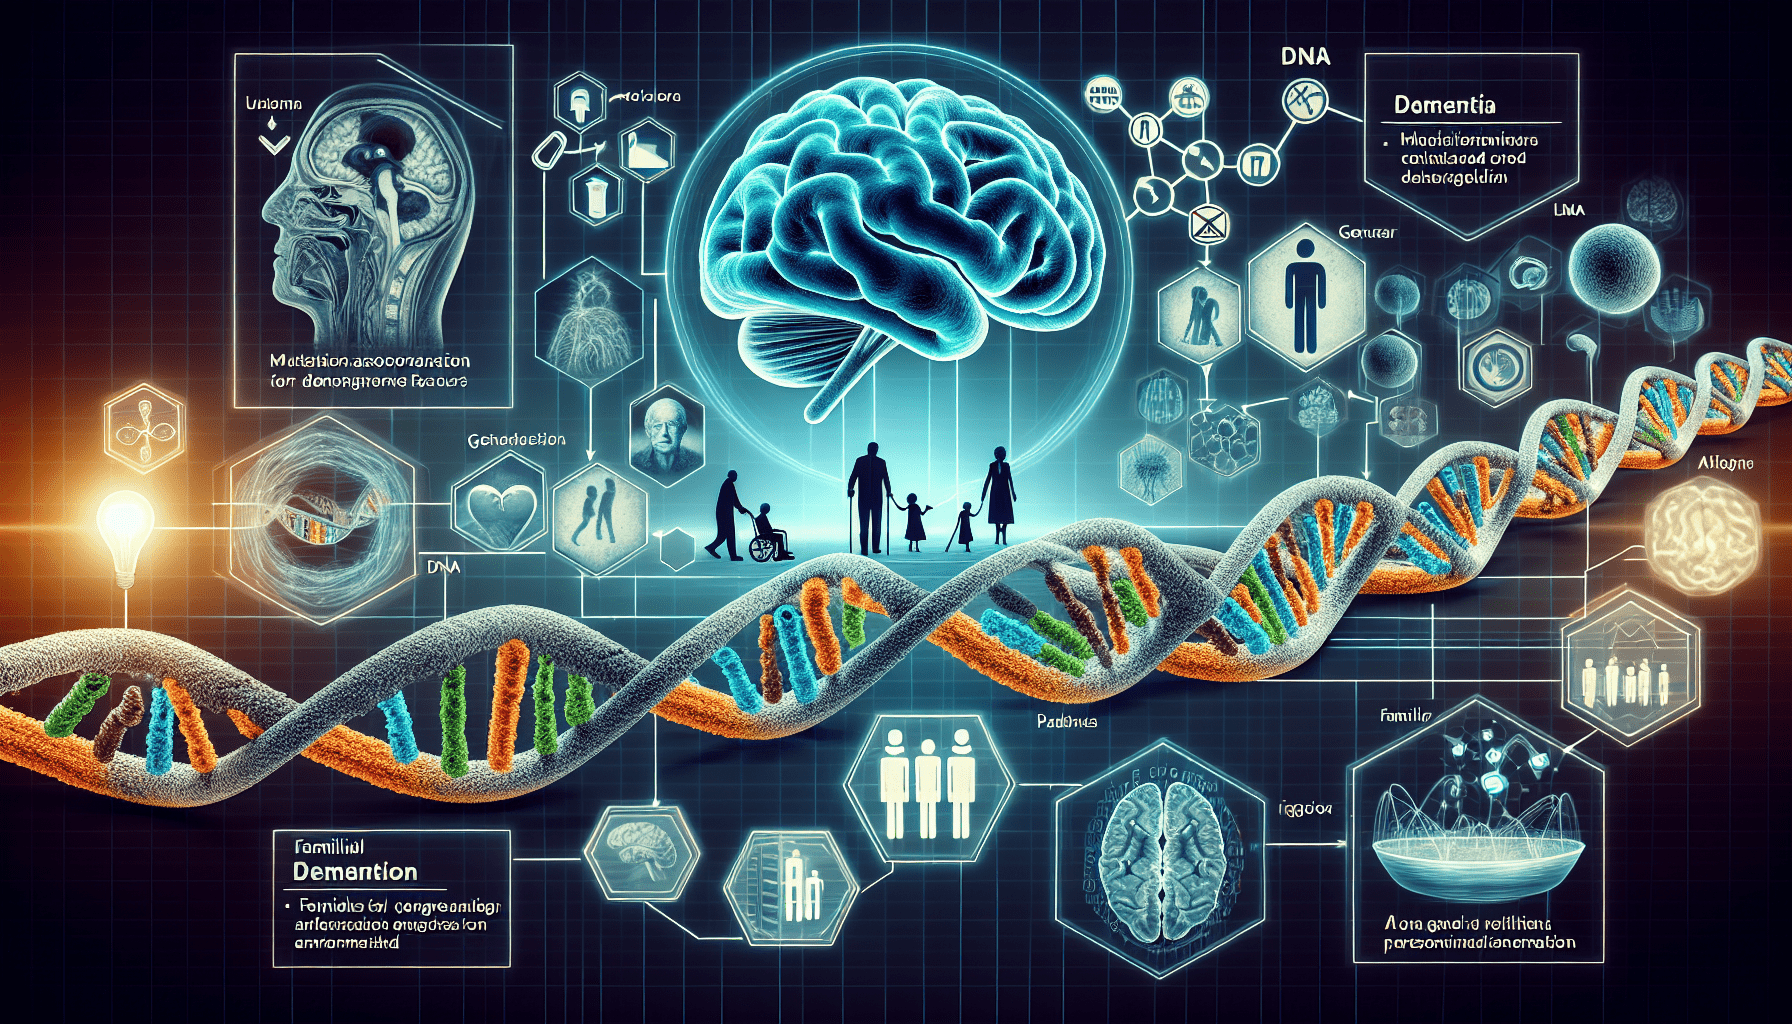 Understanding the Genetic Factors of Dementia